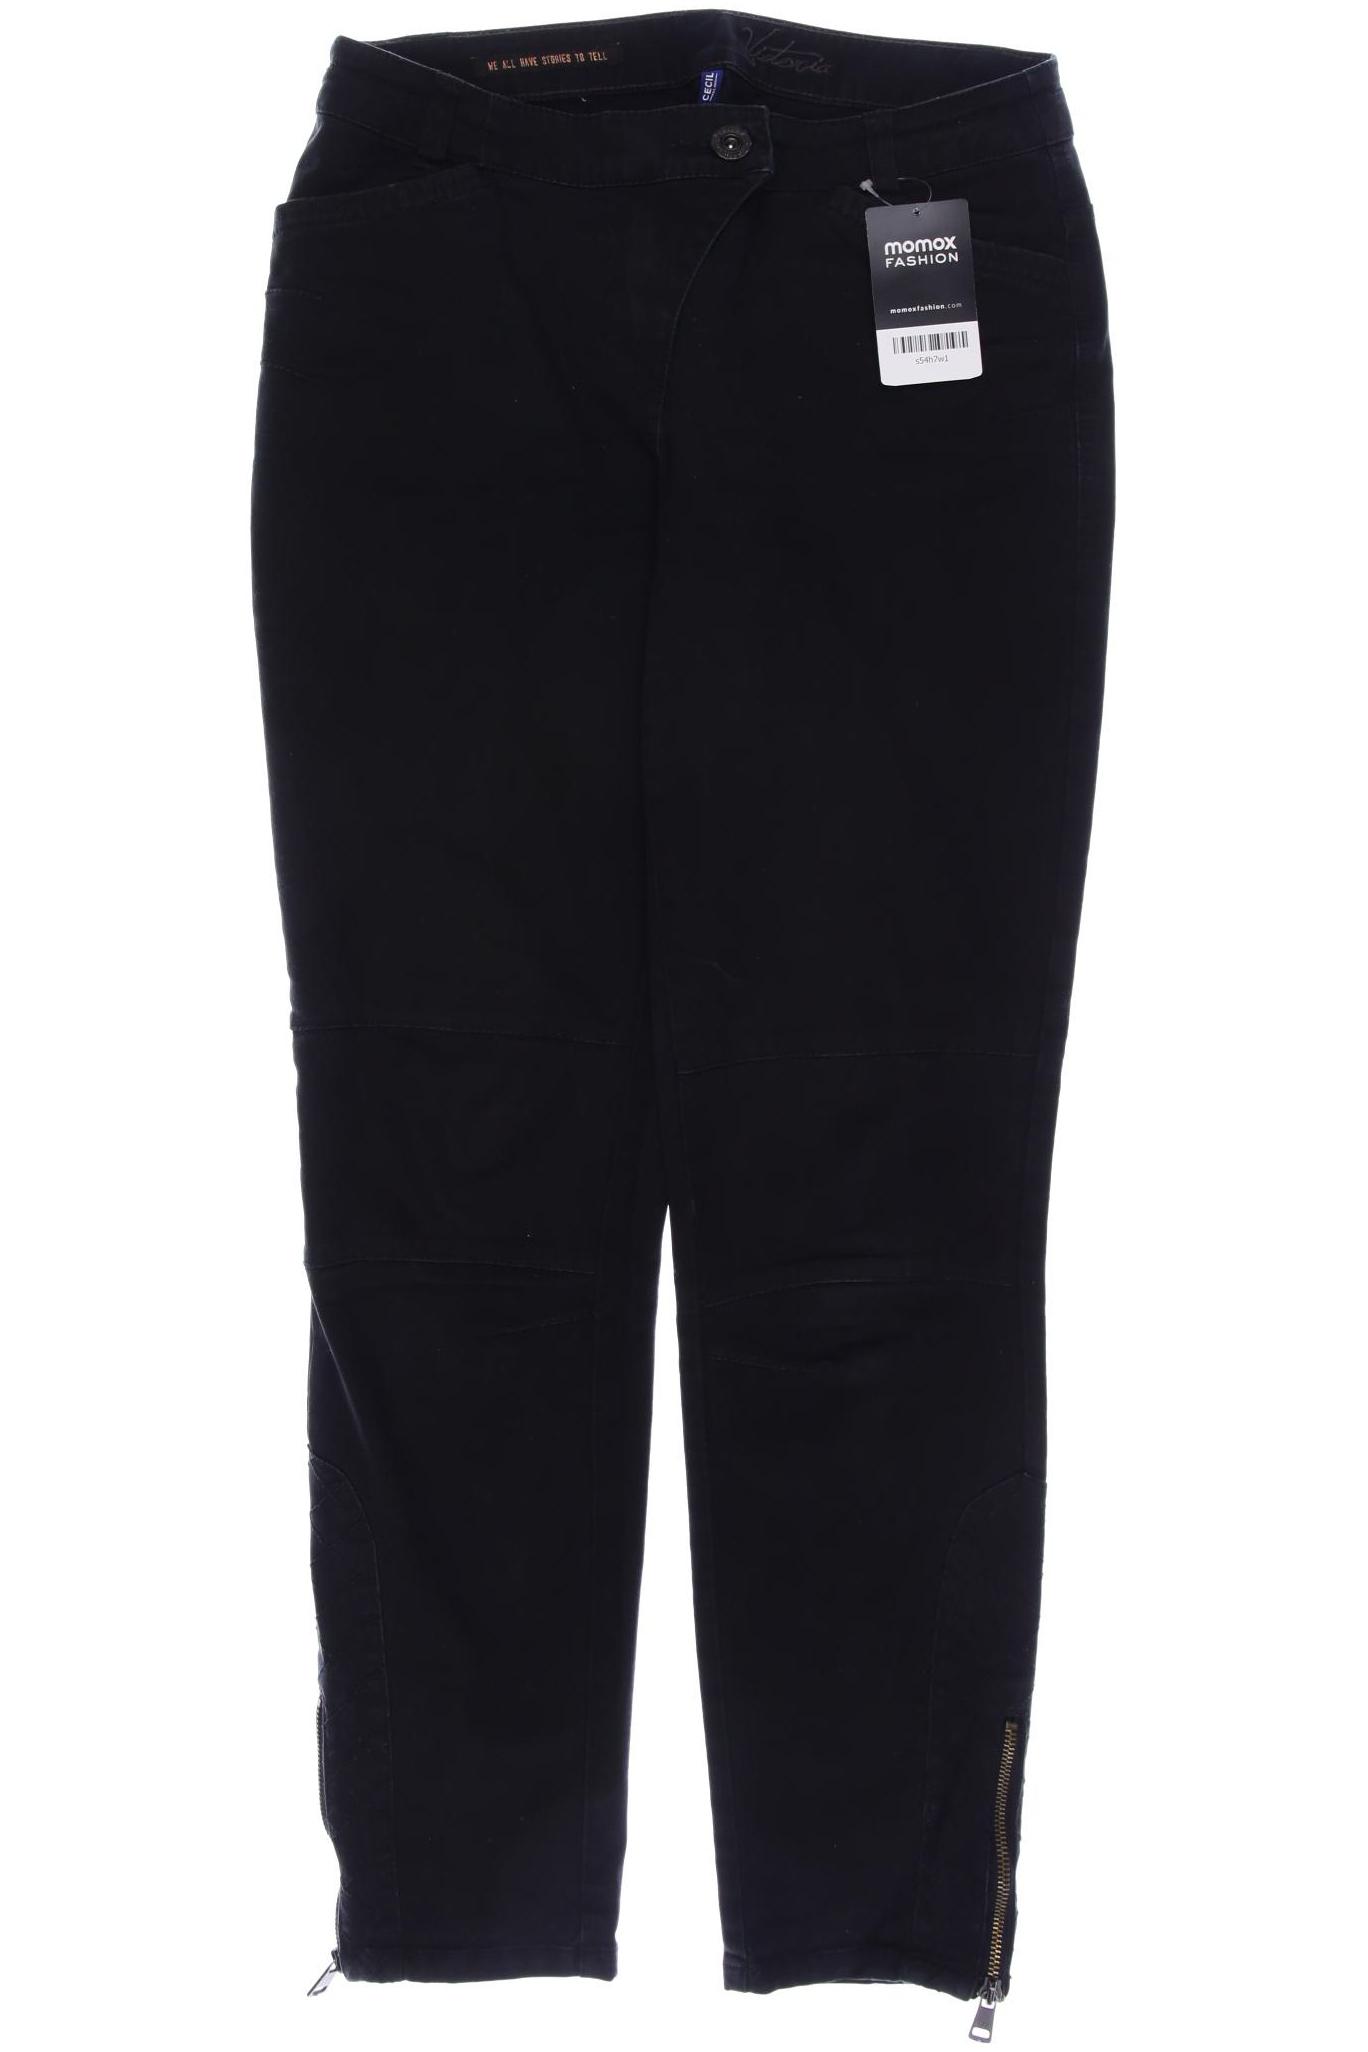 Cecil Damen Jeans, schwarz, Gr. 38 von cecil